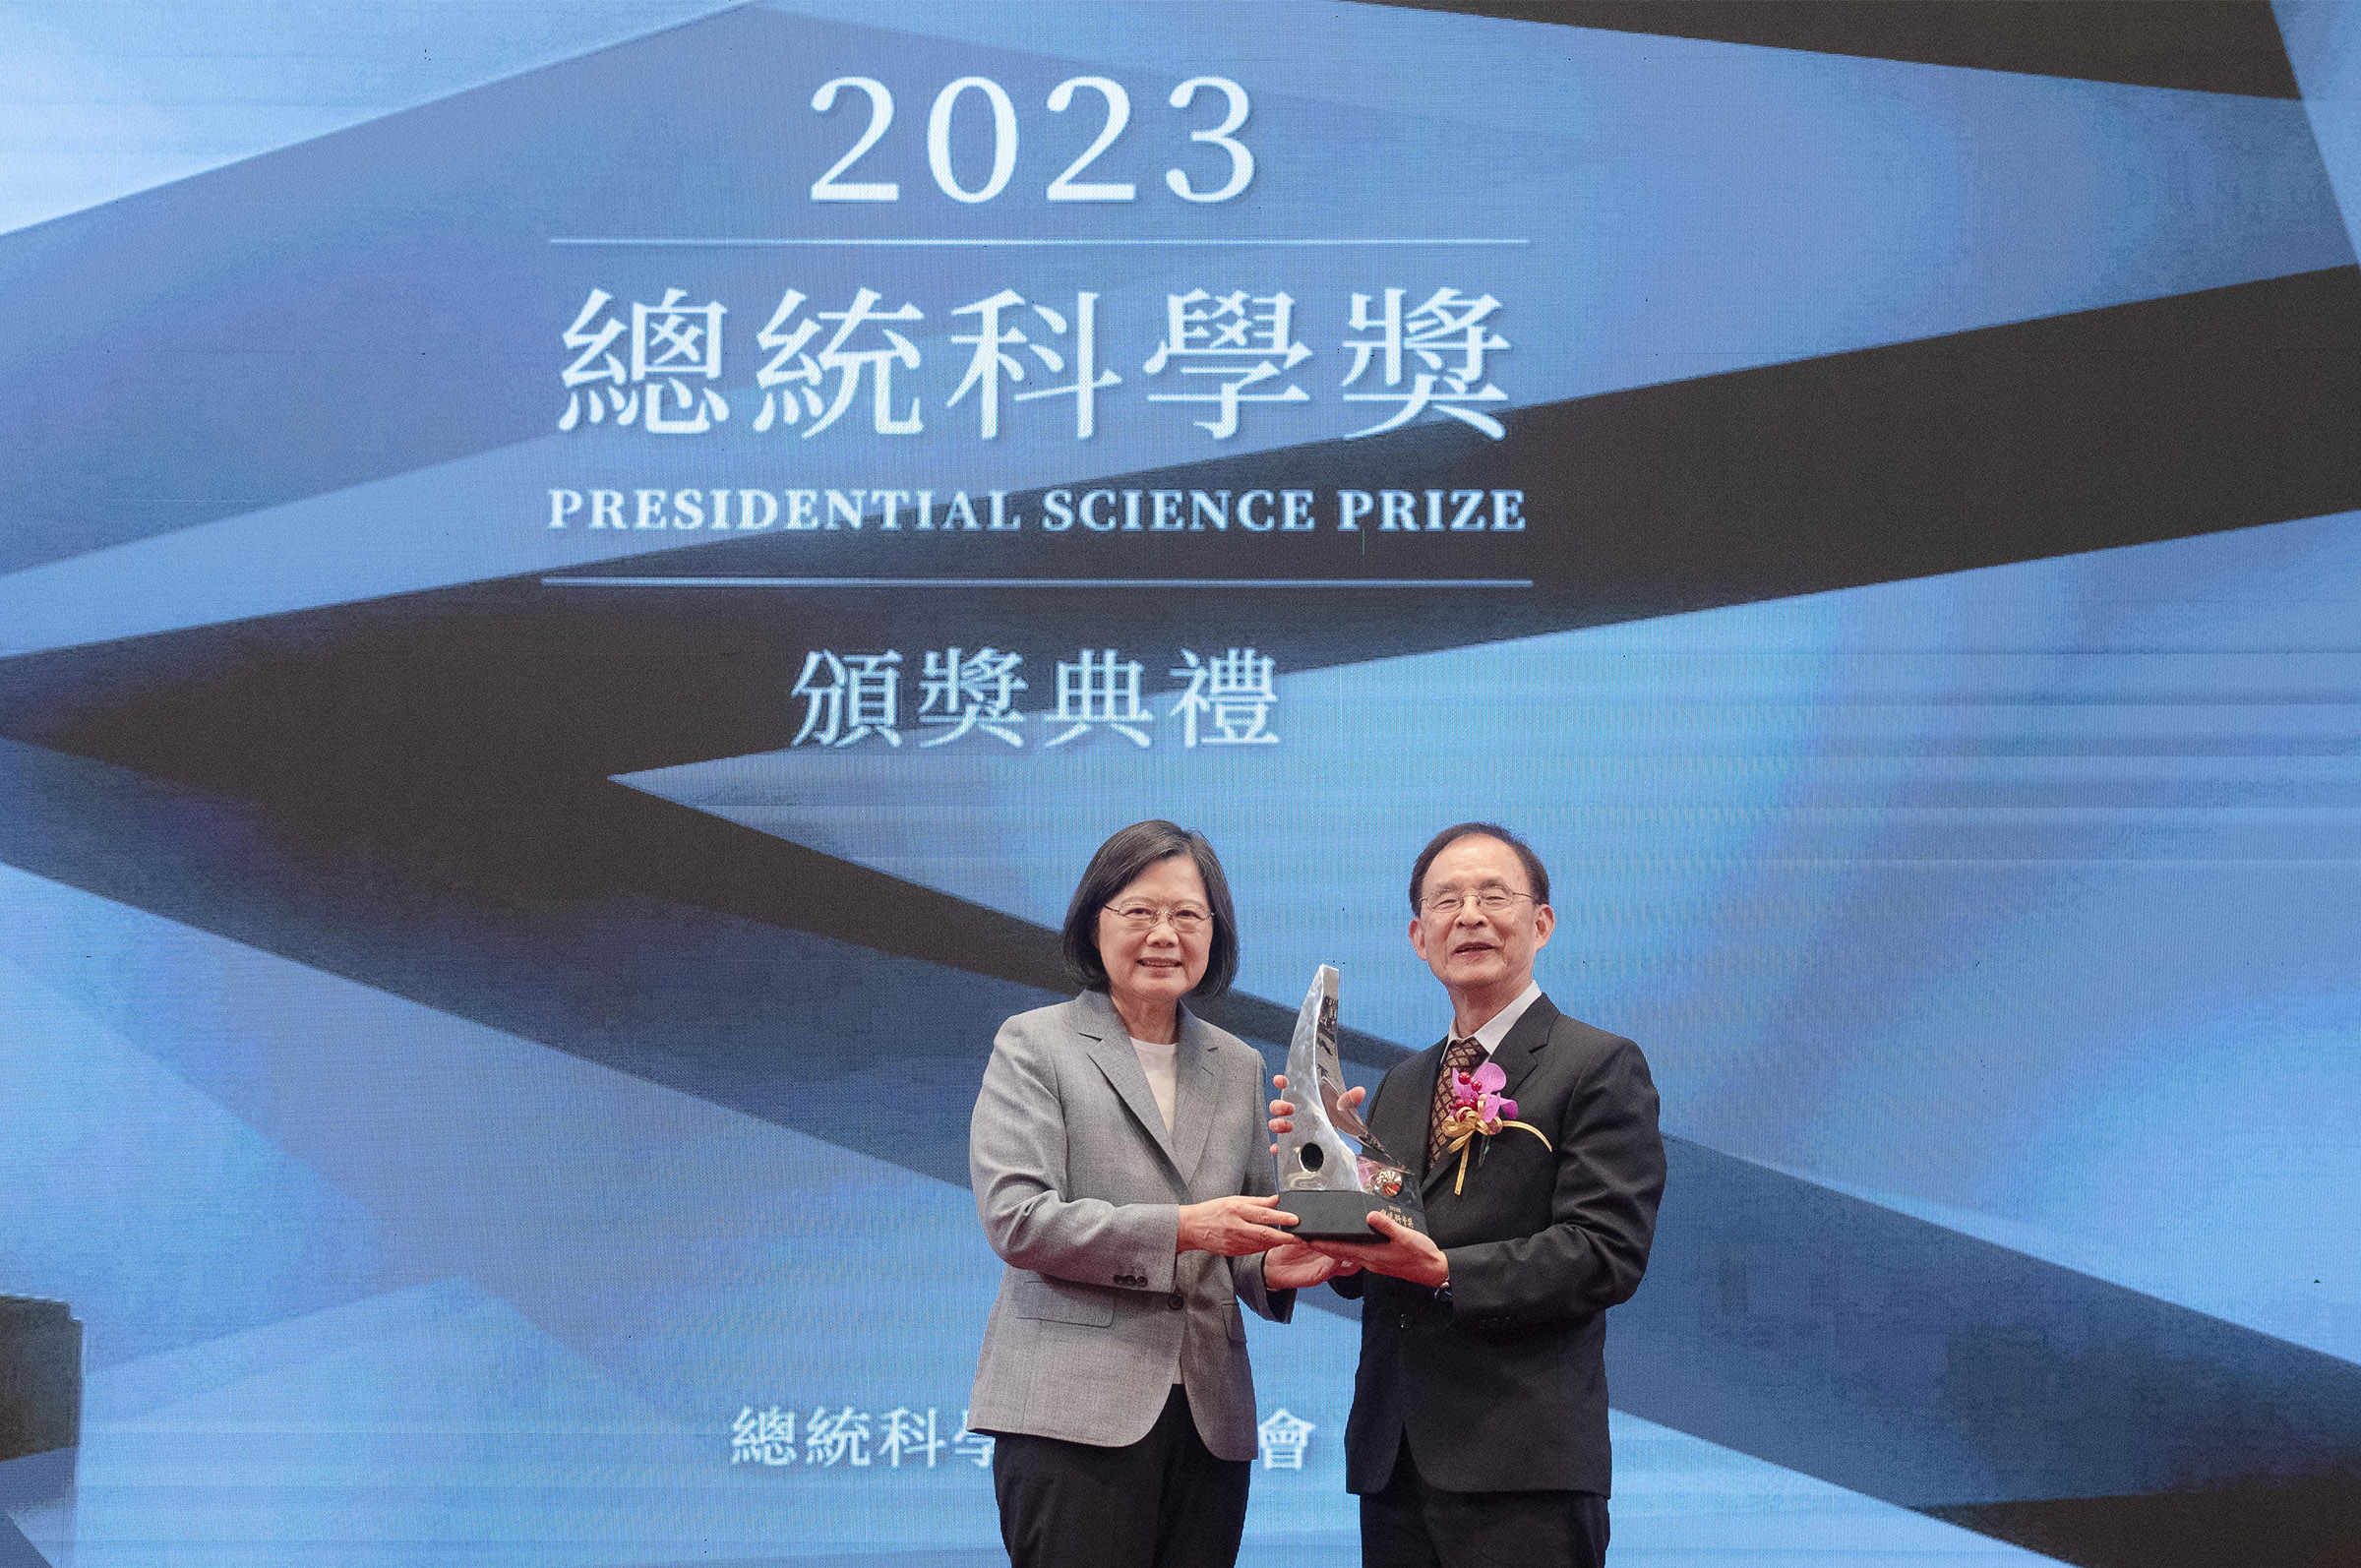 總統頒發2023年總統科學獎予獲獎人李文雄院士。照片國科會提供